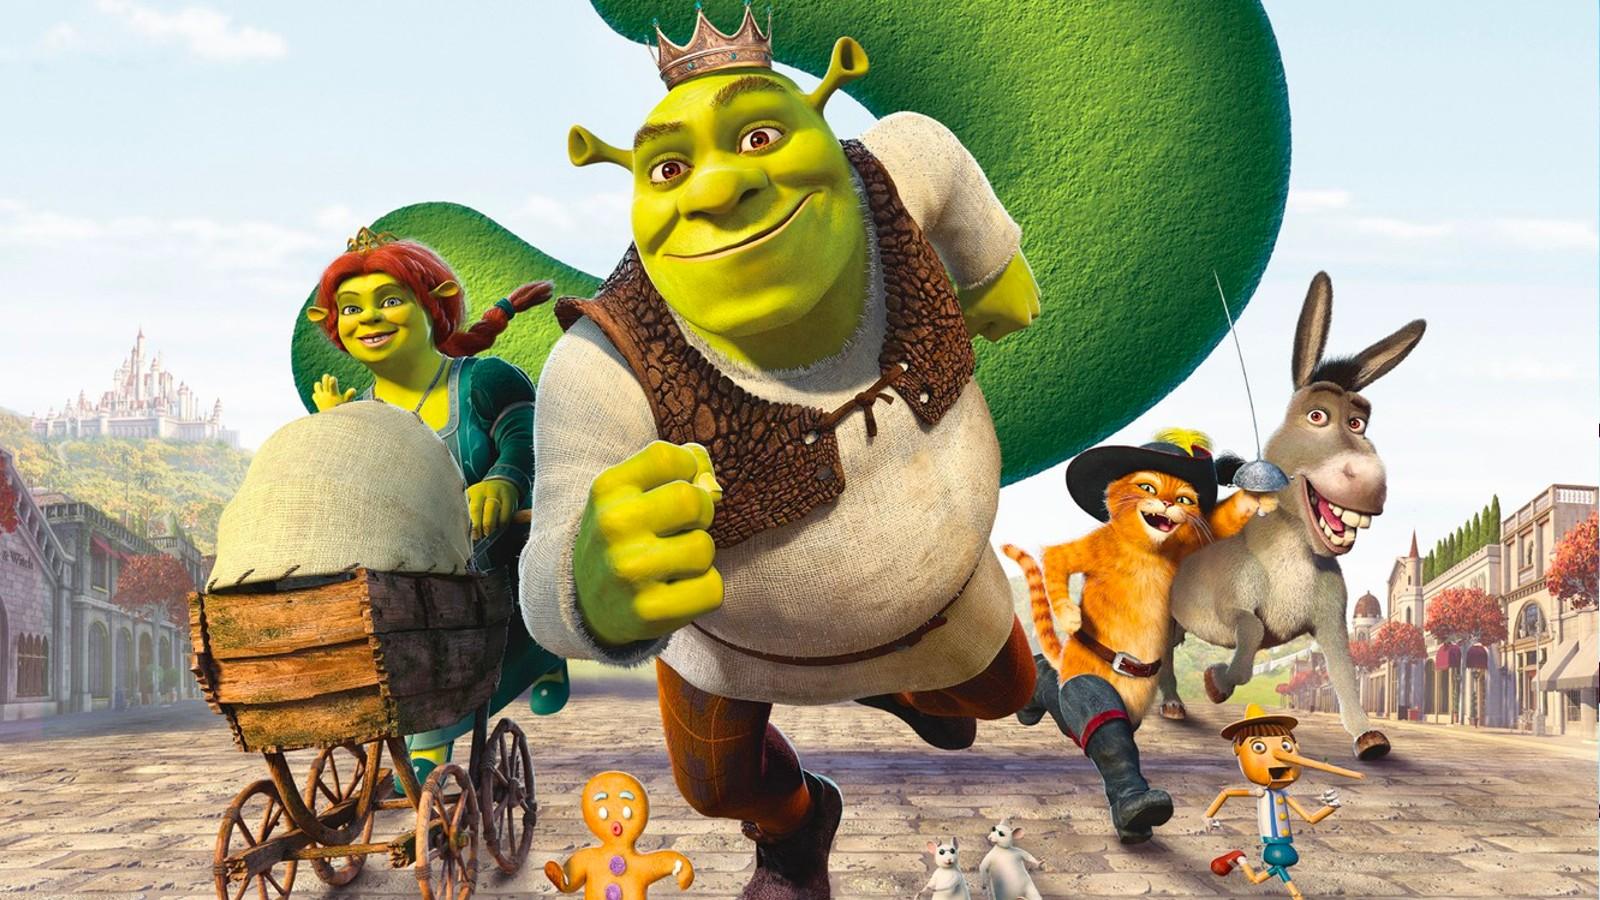 A poster for Shrek